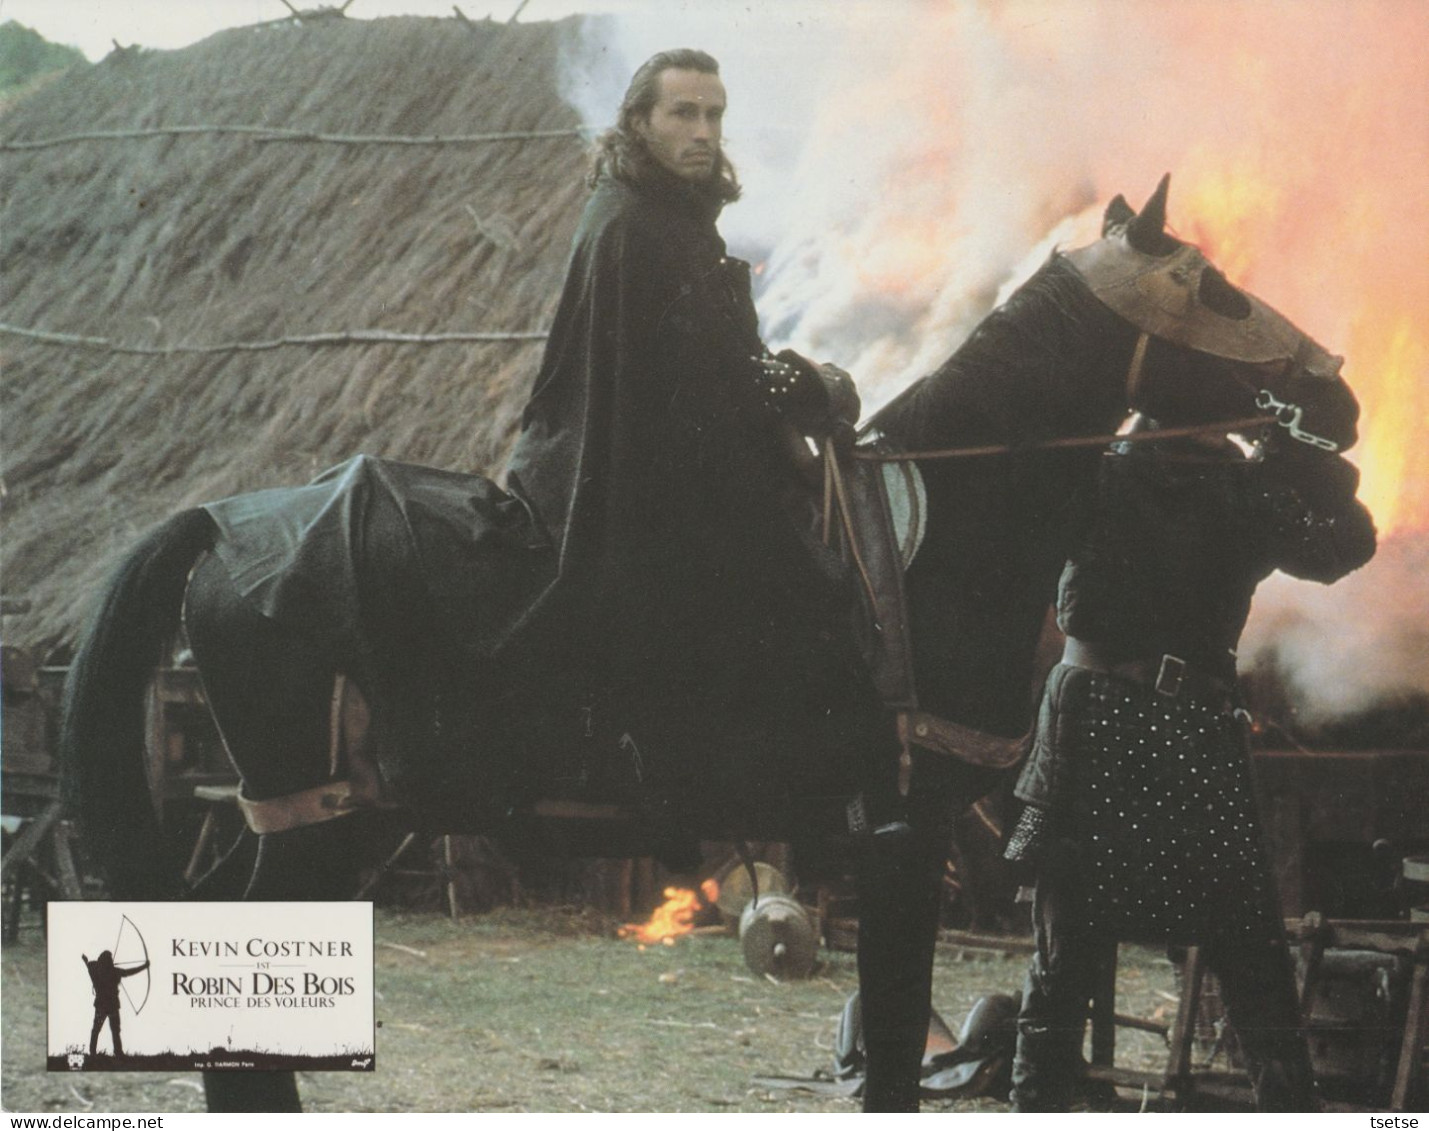 Série de 14 grandes photos ,affichées dans les cinémas du film " Robin des Bois " avec Kevin Costner - 1991